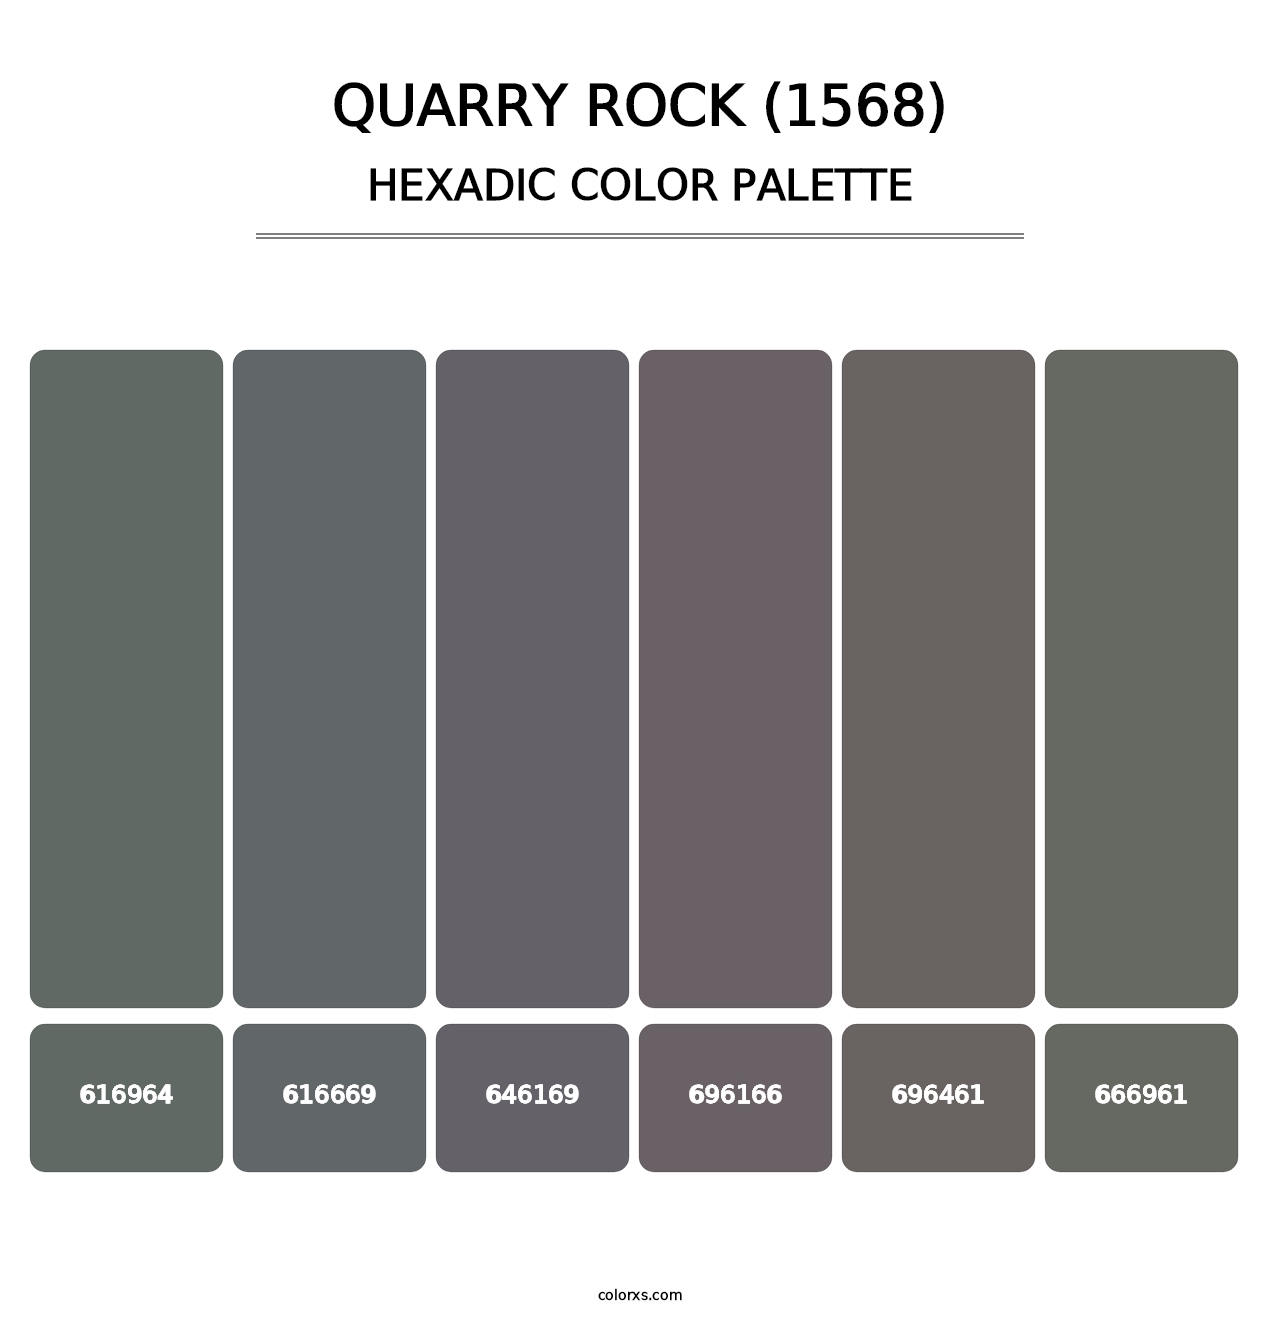 Quarry Rock (1568) - Hexadic Color Palette